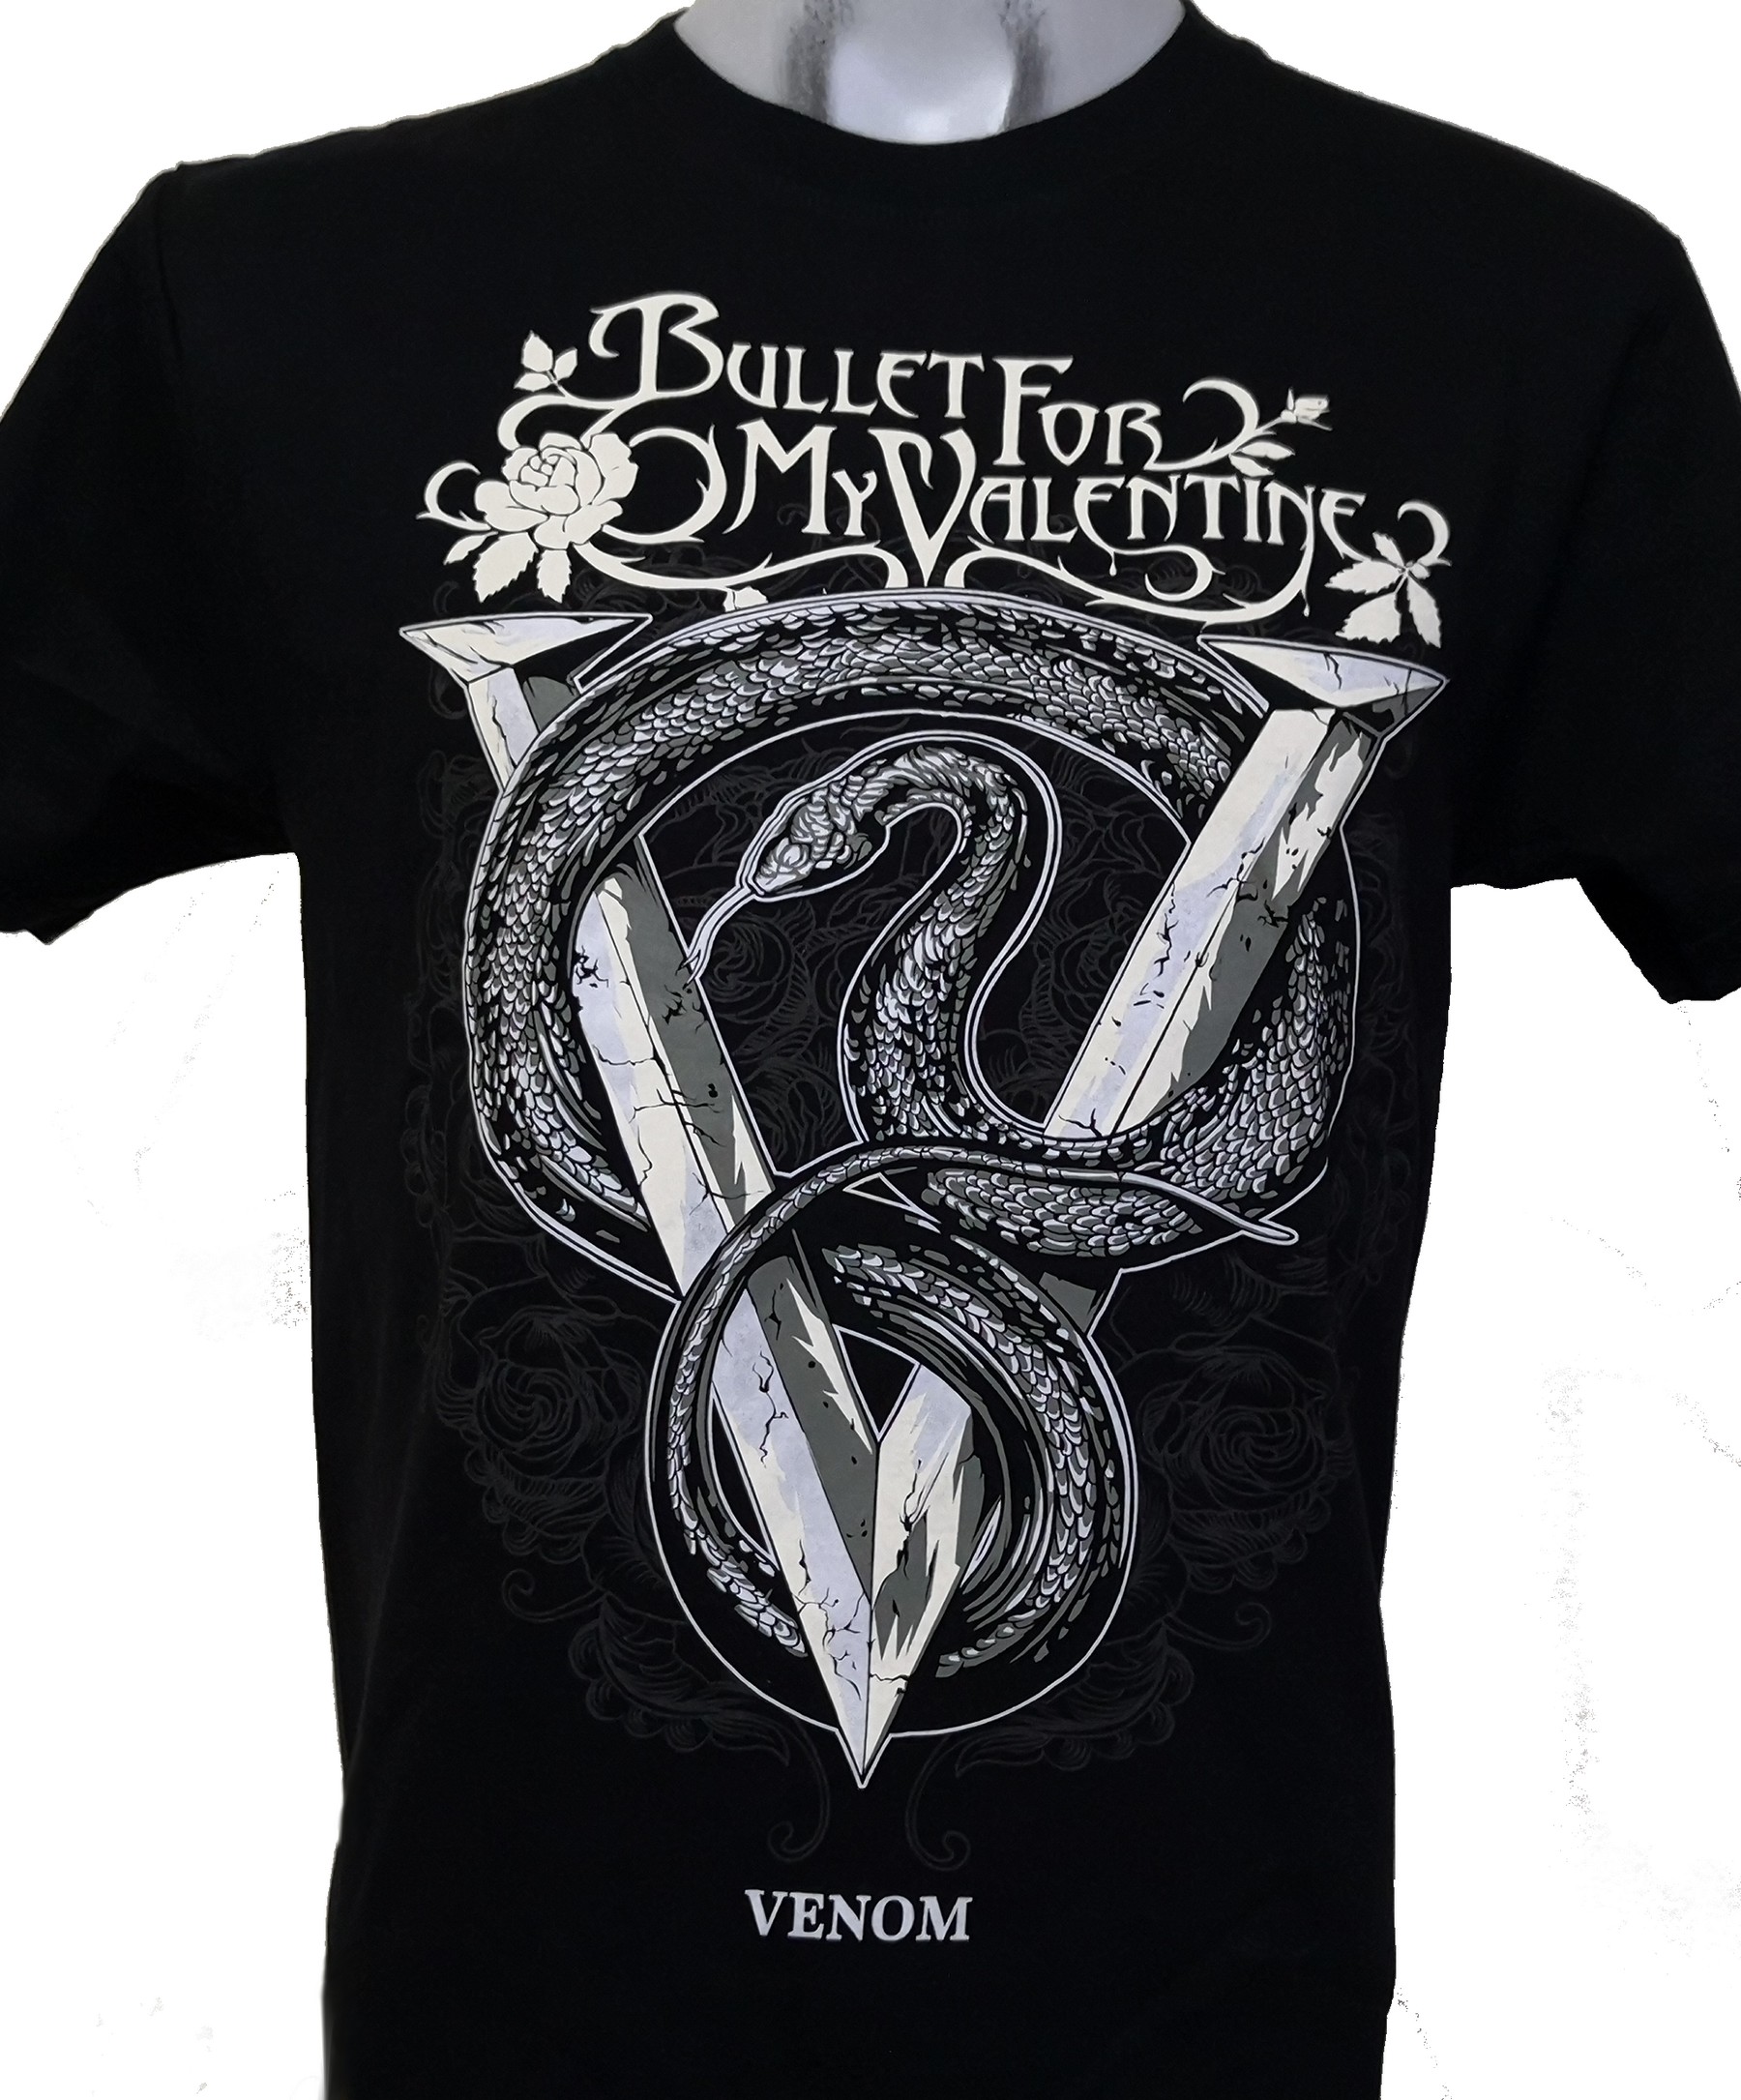 Bullet For My Valentine T Shirt Venom Size Xl Roxxbkk